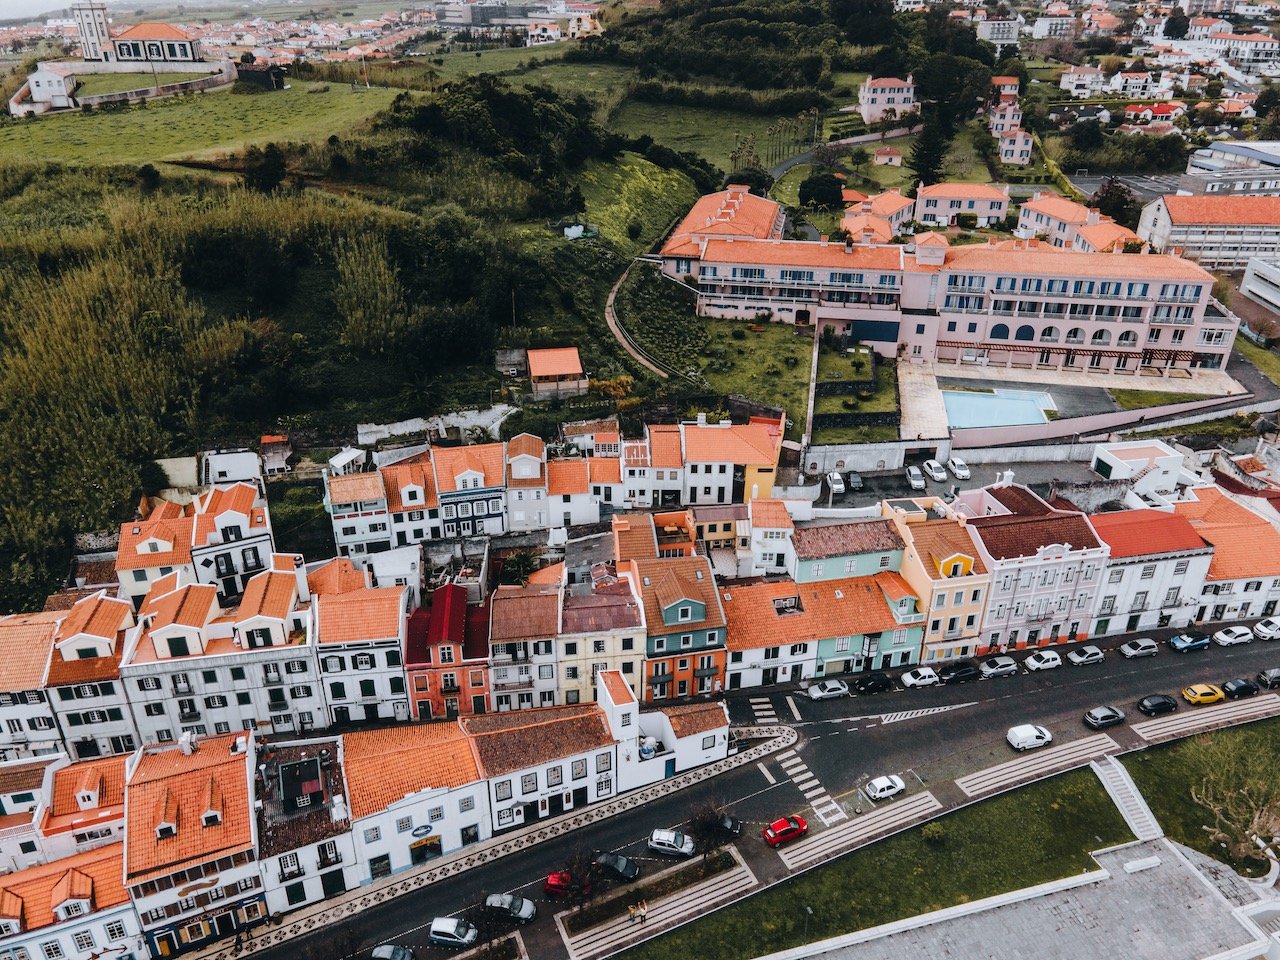   Horta, Faial, the Azores (ISO 100, 4.5 mm,  f /2.8, 1/40 s)  